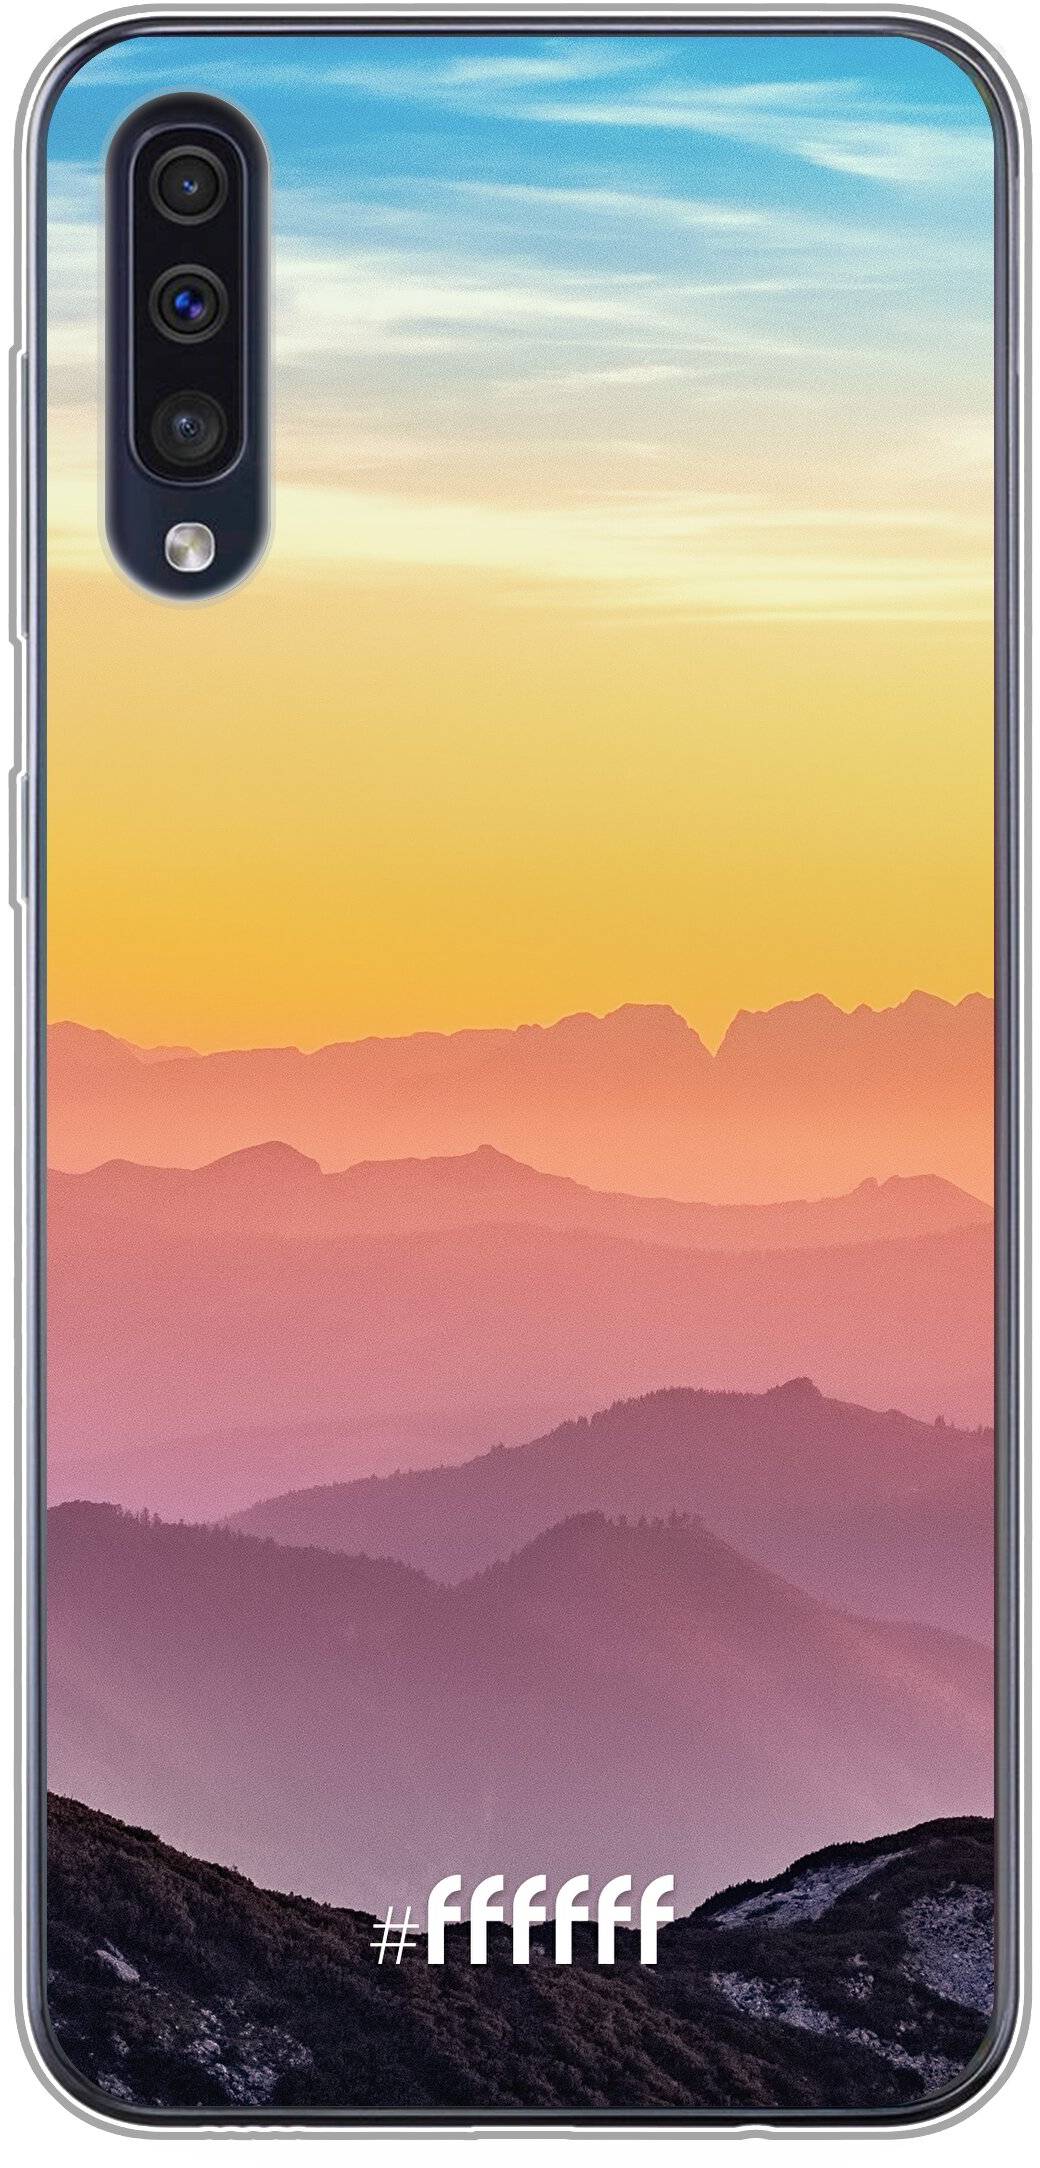 Golden Hour Galaxy A50